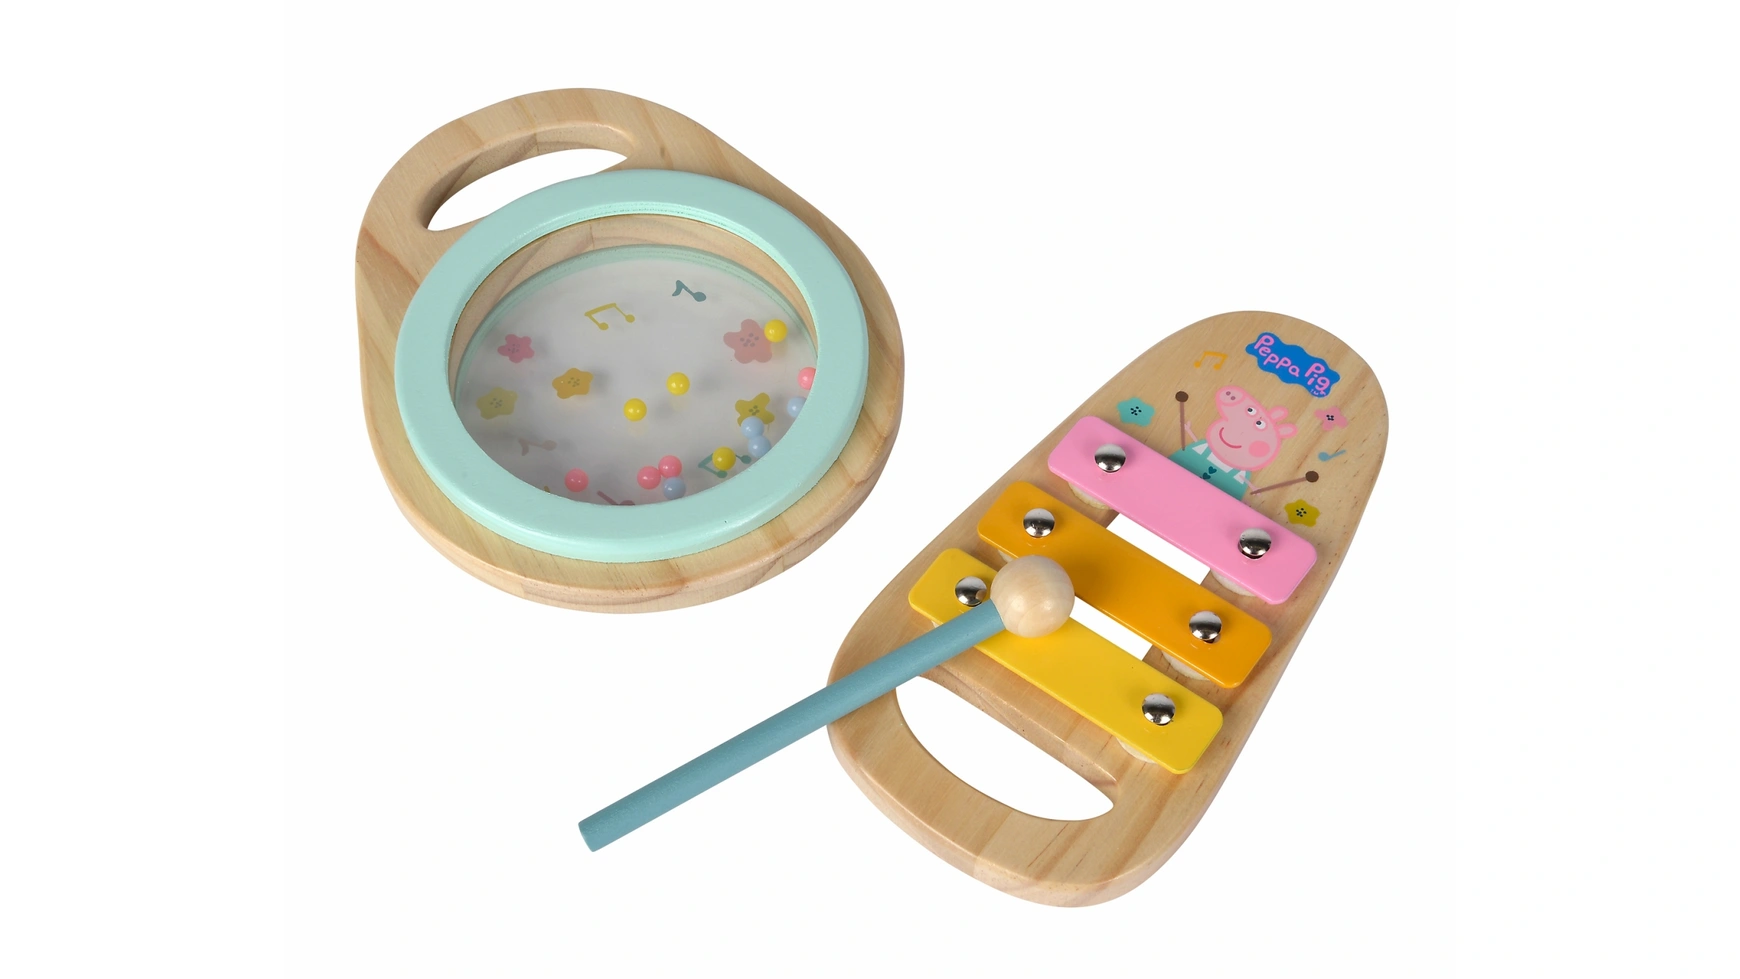 Eichhorn Симба свинка пеппа деревянный музыкальный набор, 2 предмета игр наб сюрприз свинка пеппа